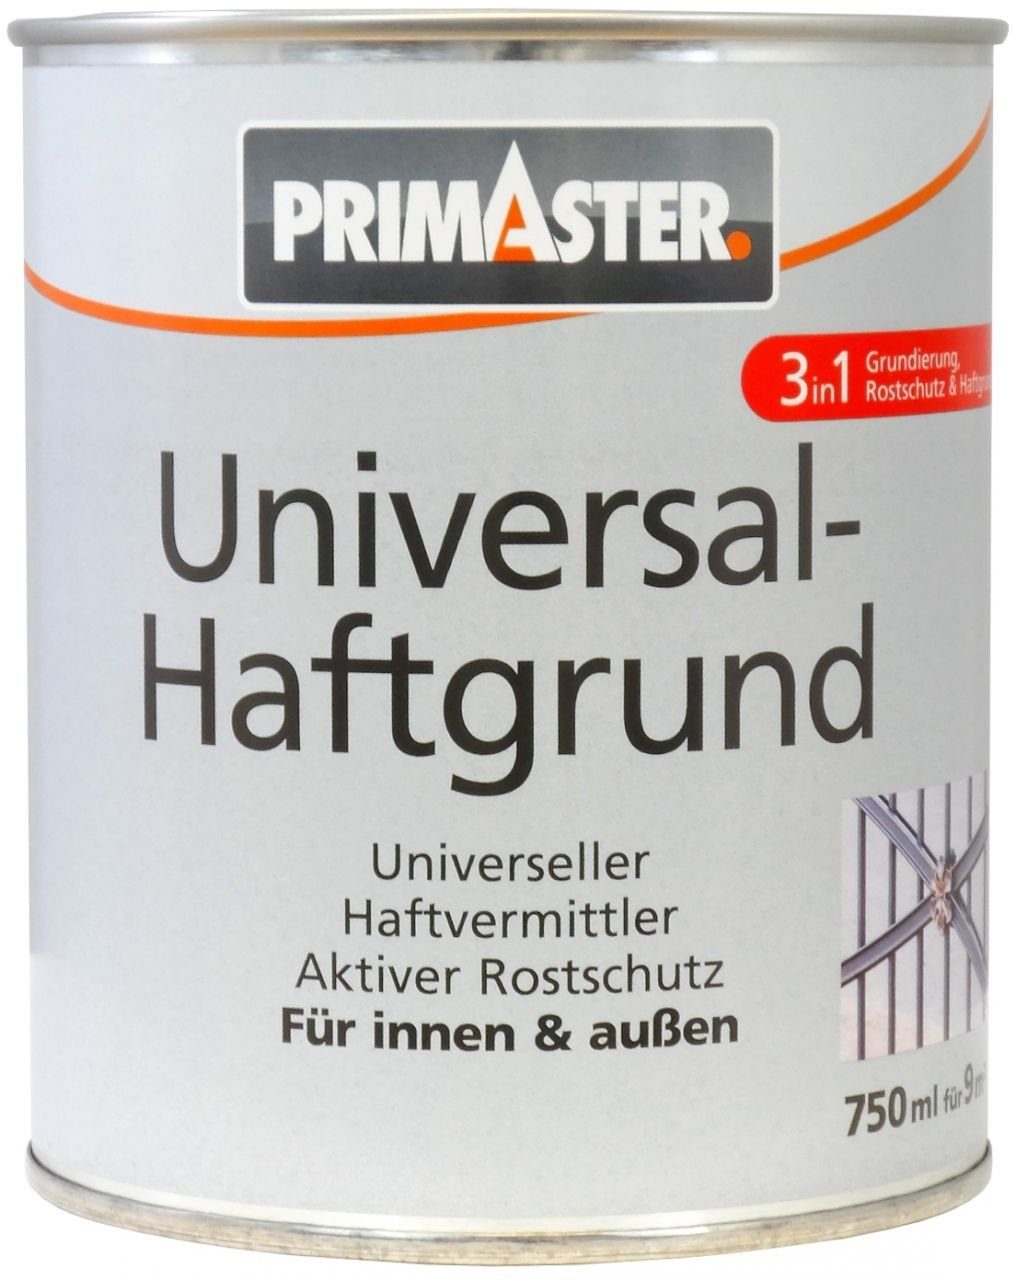 Universal-Haftgrund Haftgrund ml grau Primaster Primaster 750